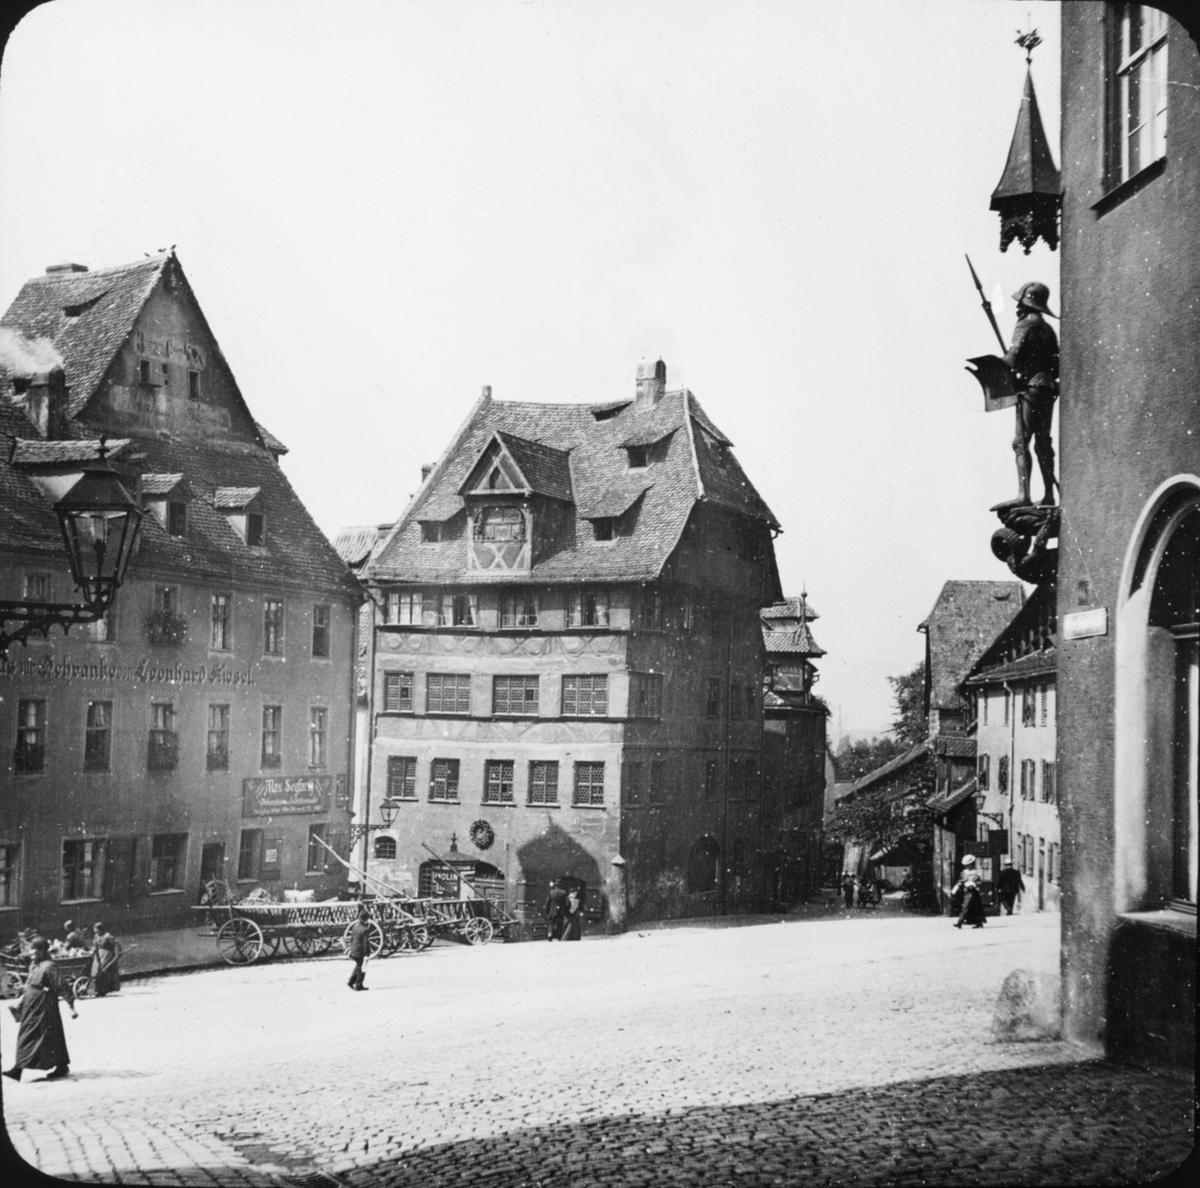 Skioptikonbild med motiv av Dürerhaus (teater?), vid torg i Nürnberg.
Bilden har förvarats i kartong märkt: Resan 1907. Nürnberg 11. 26. Text på bild: "Dürerhaus".